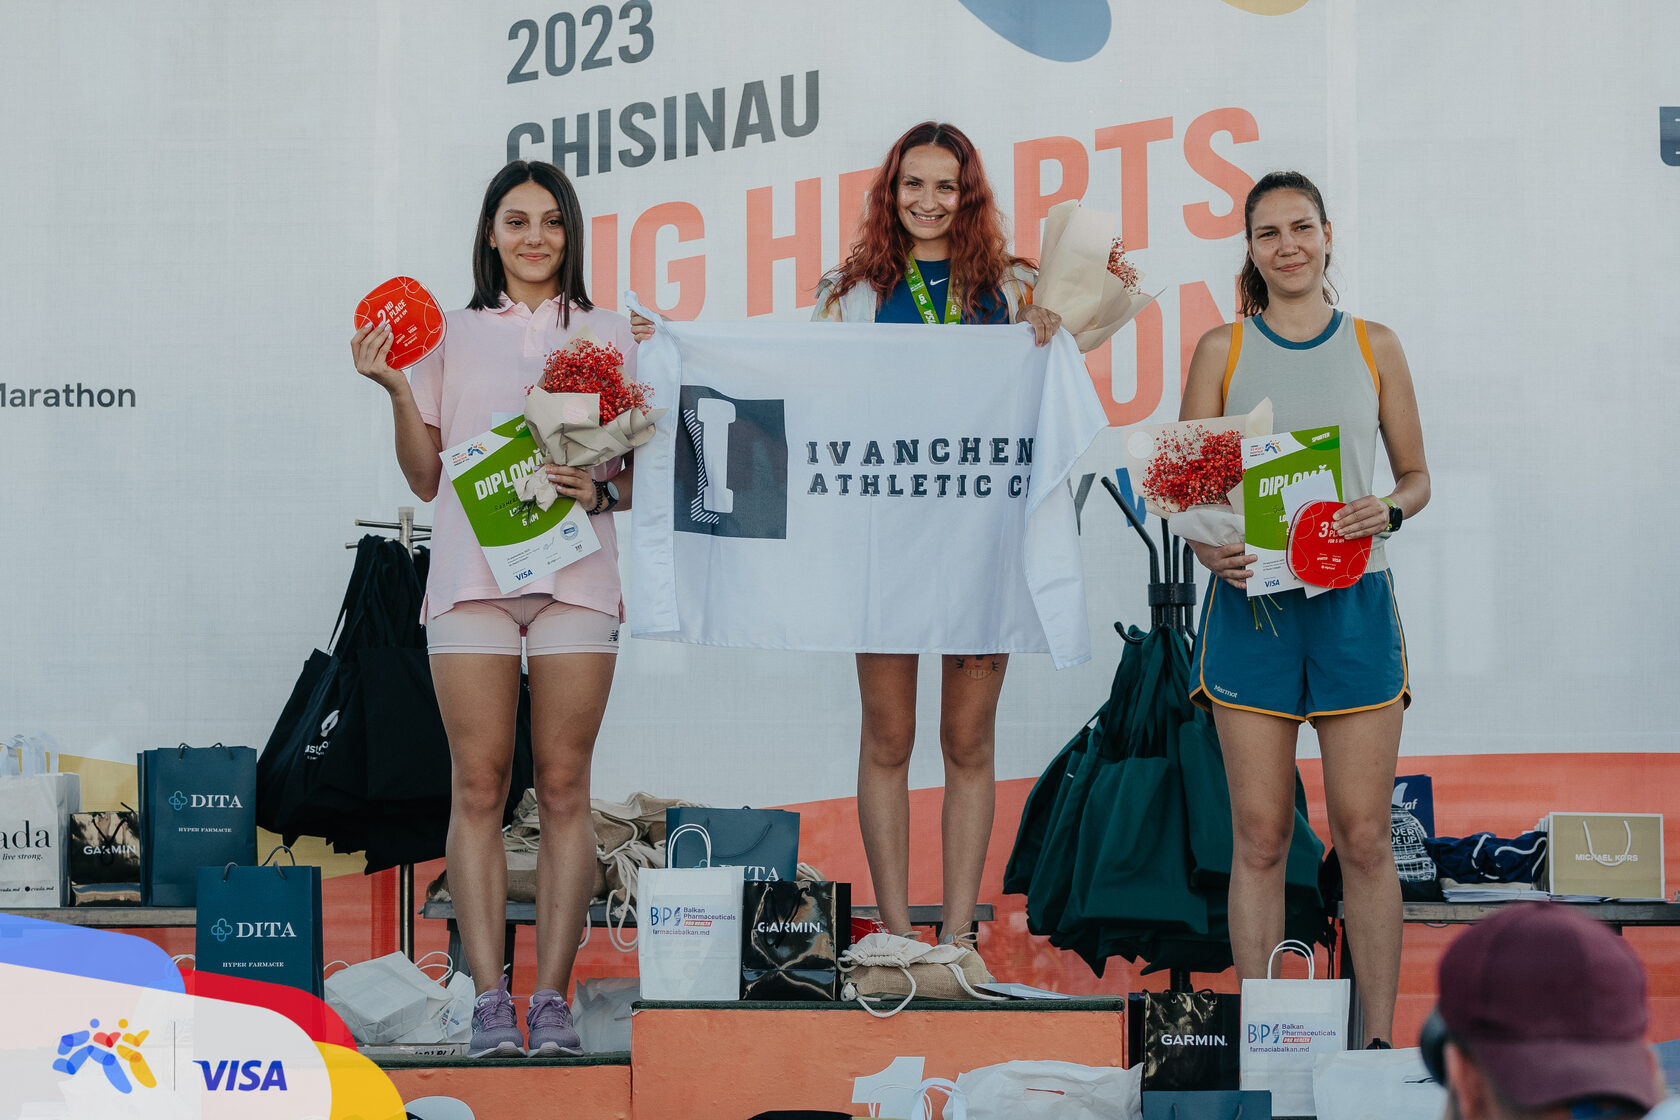 Тысячи атлетов из десятков стран: состоялся Chisinau Big Hearts Marathon  powered by Visa